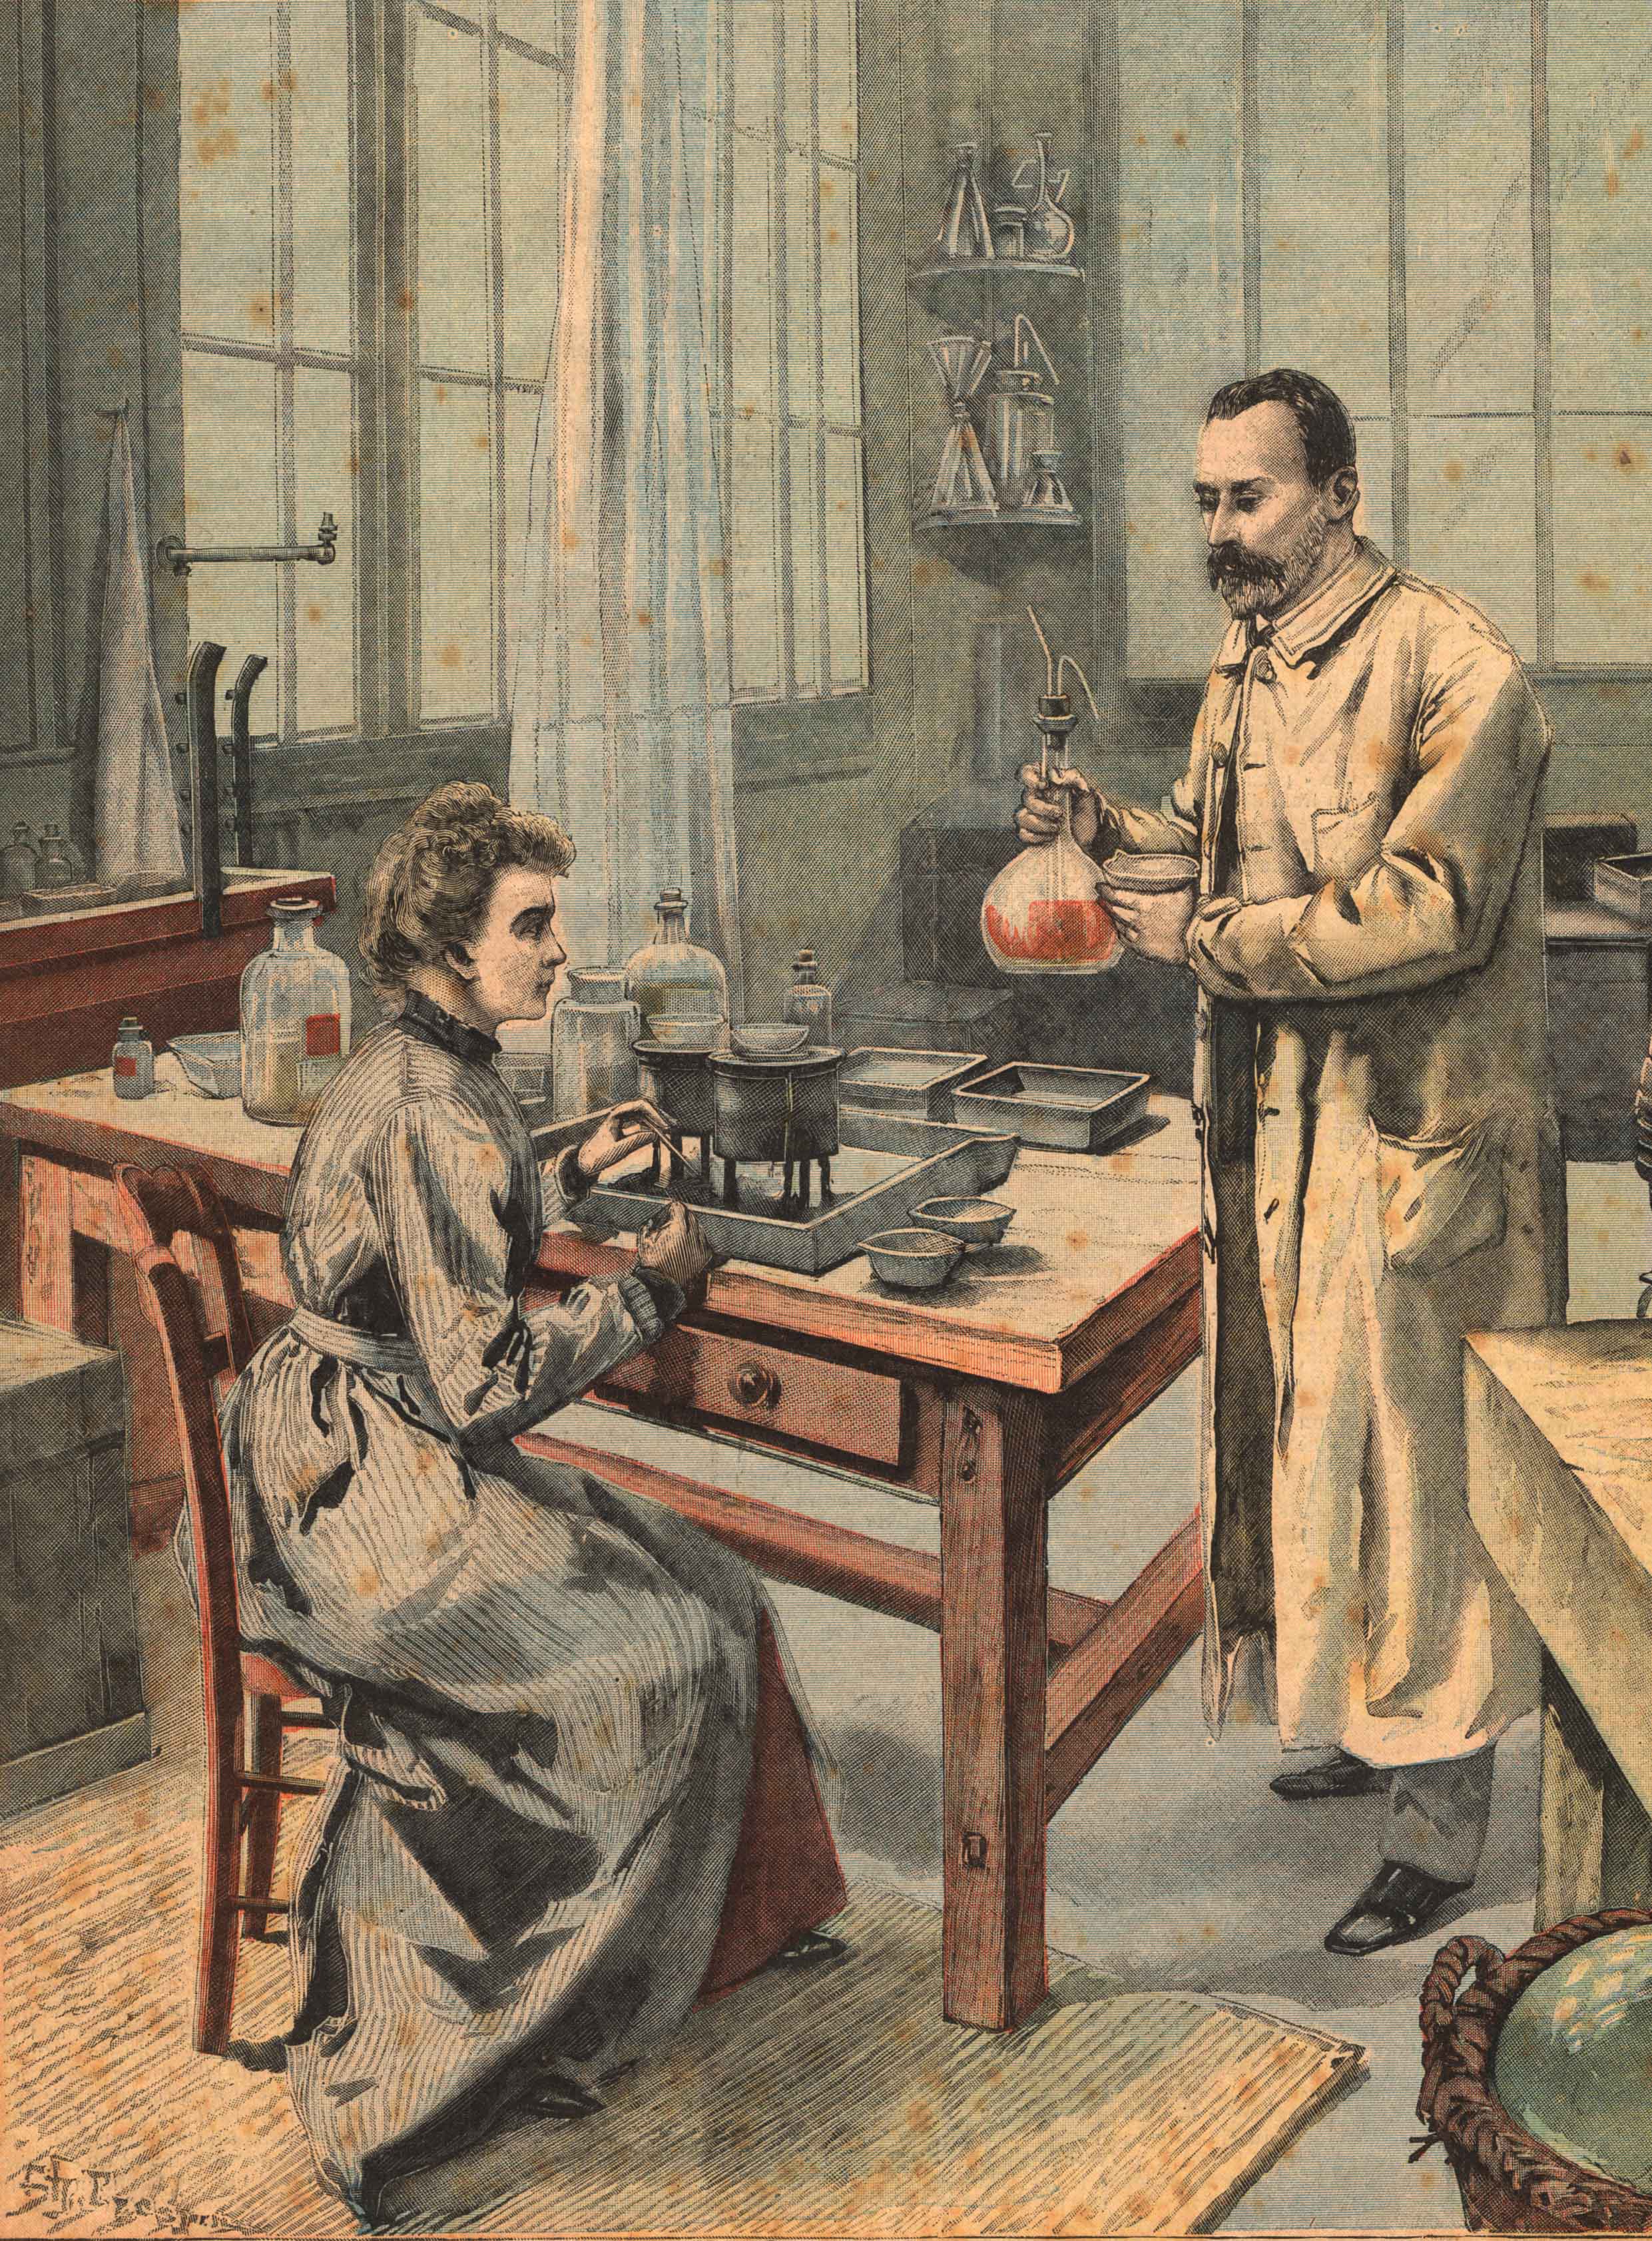 Marie Curie, una precursora extraordinaria